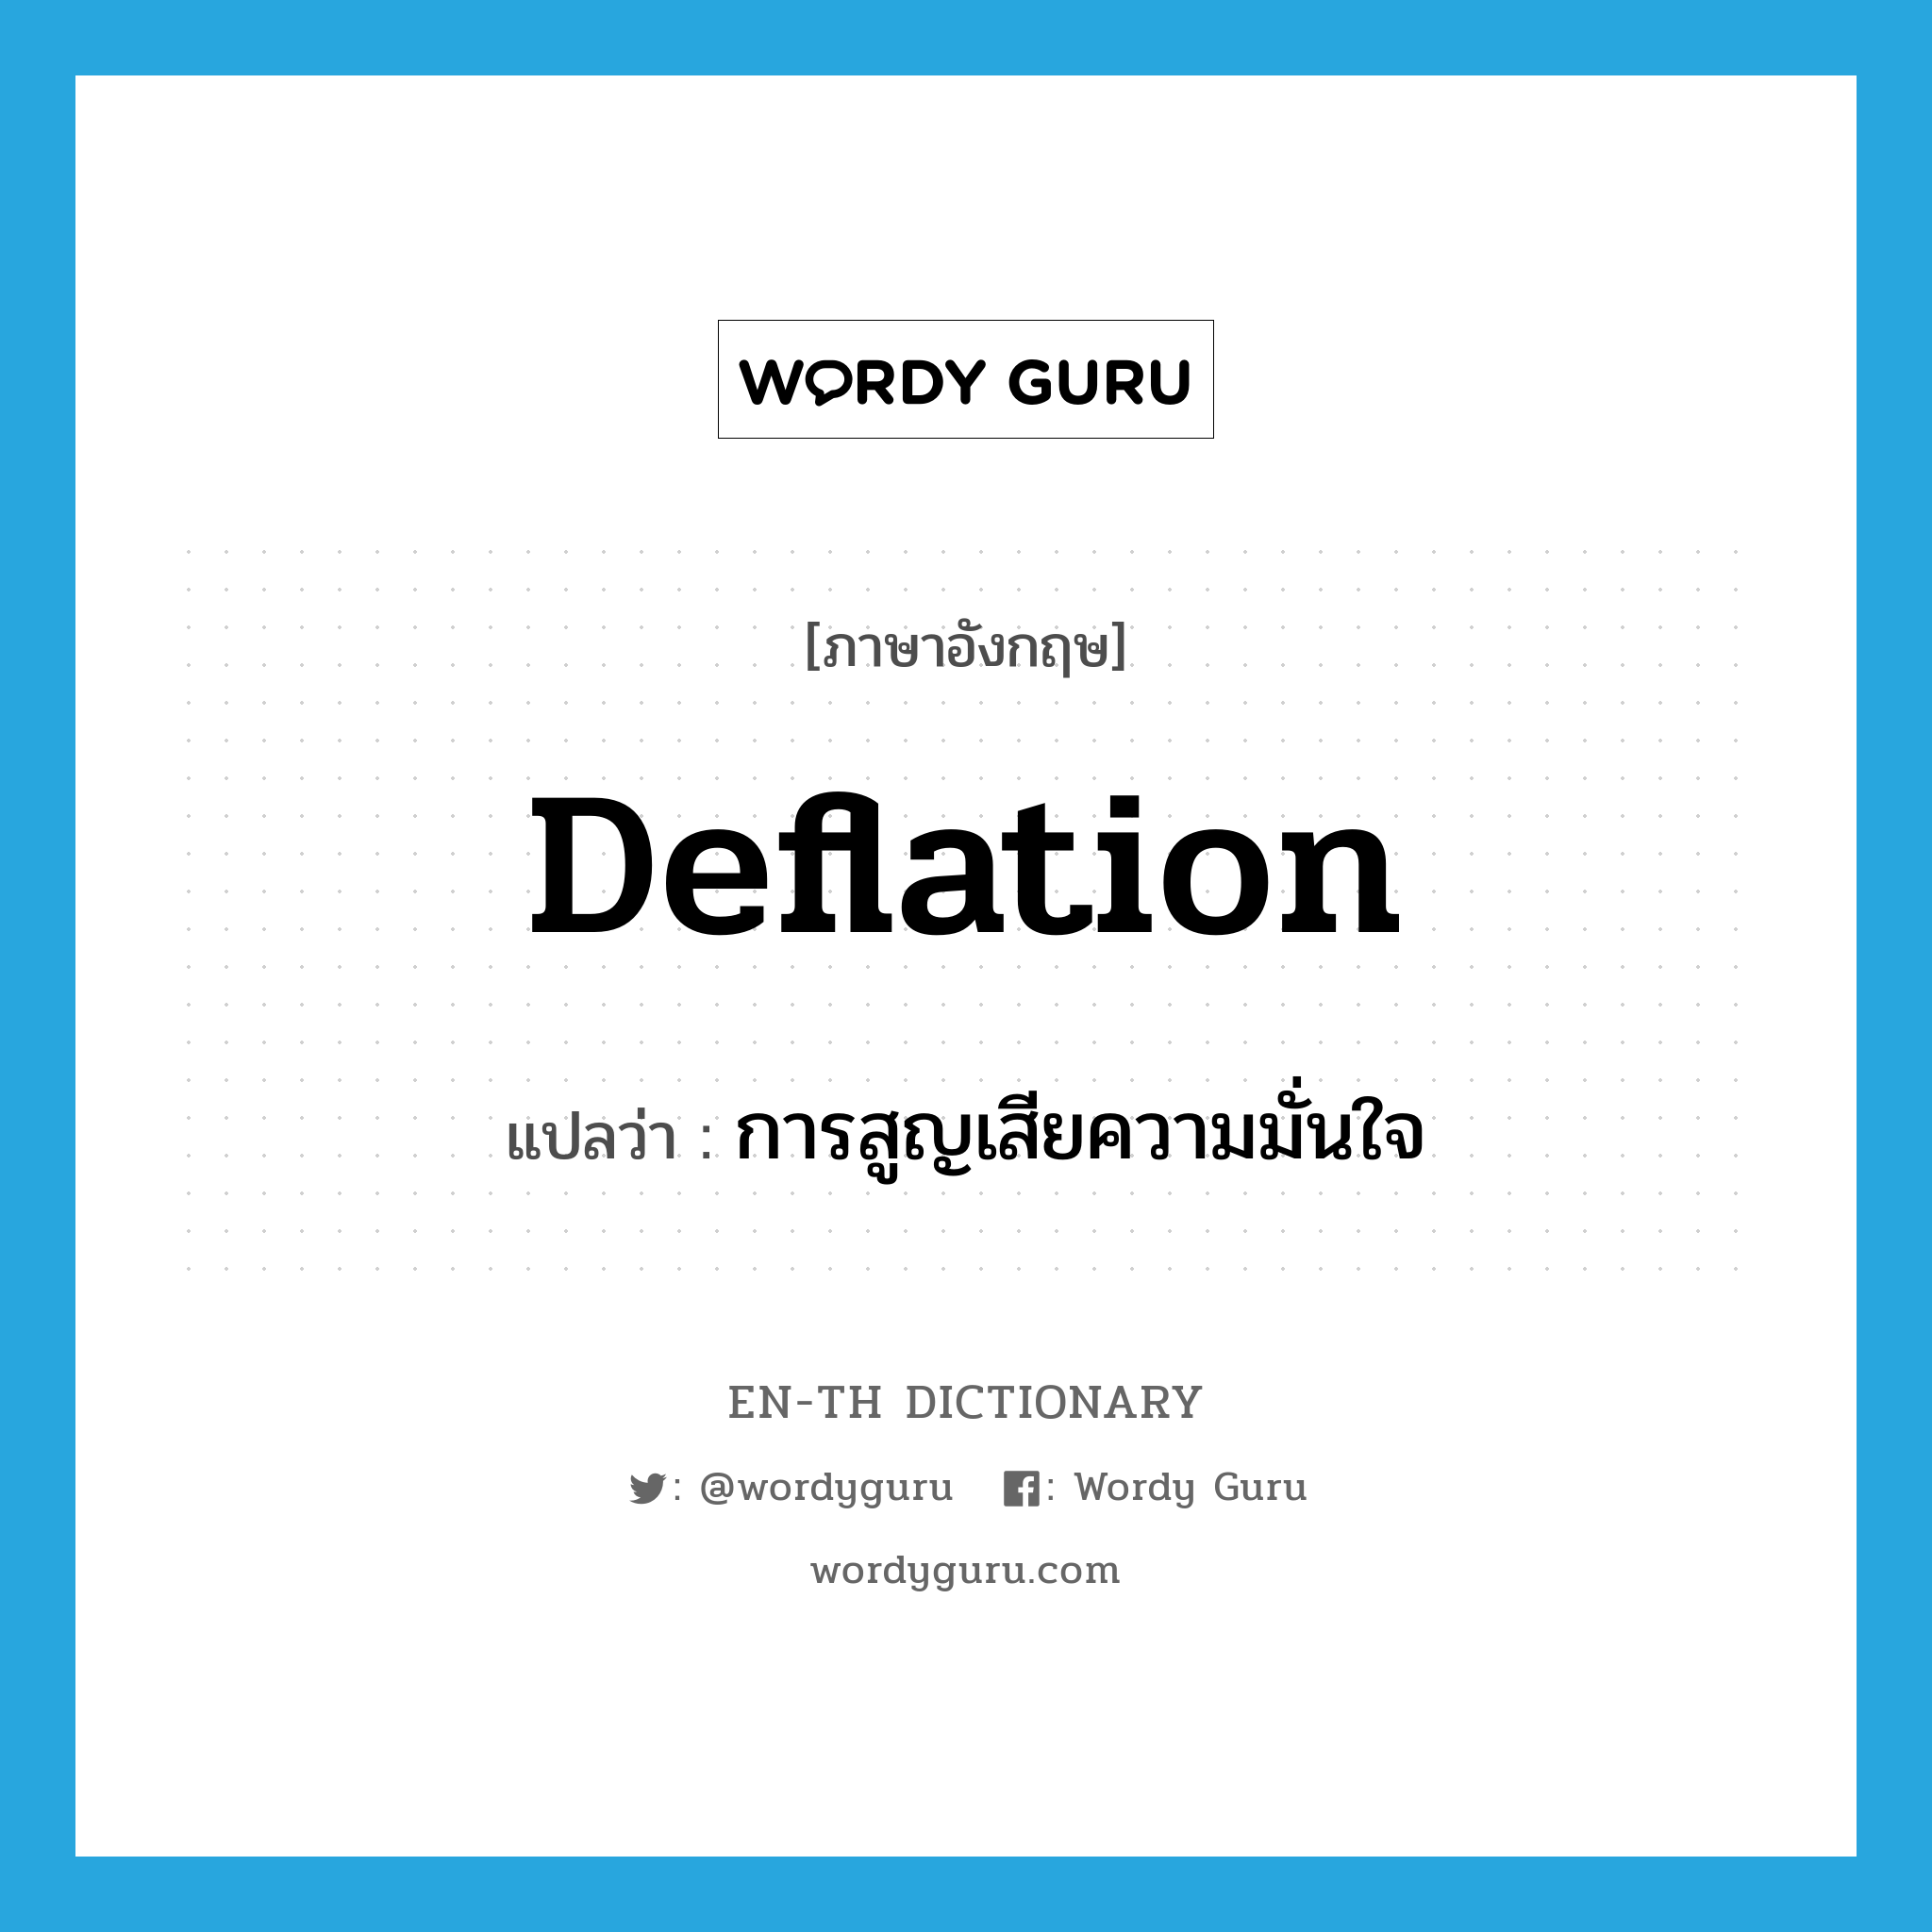 การสูญเสียความมั่นใจ ภาษาอังกฤษ?, คำศัพท์ภาษาอังกฤษ การสูญเสียความมั่นใจ แปลว่า deflation ประเภท N หมวด N